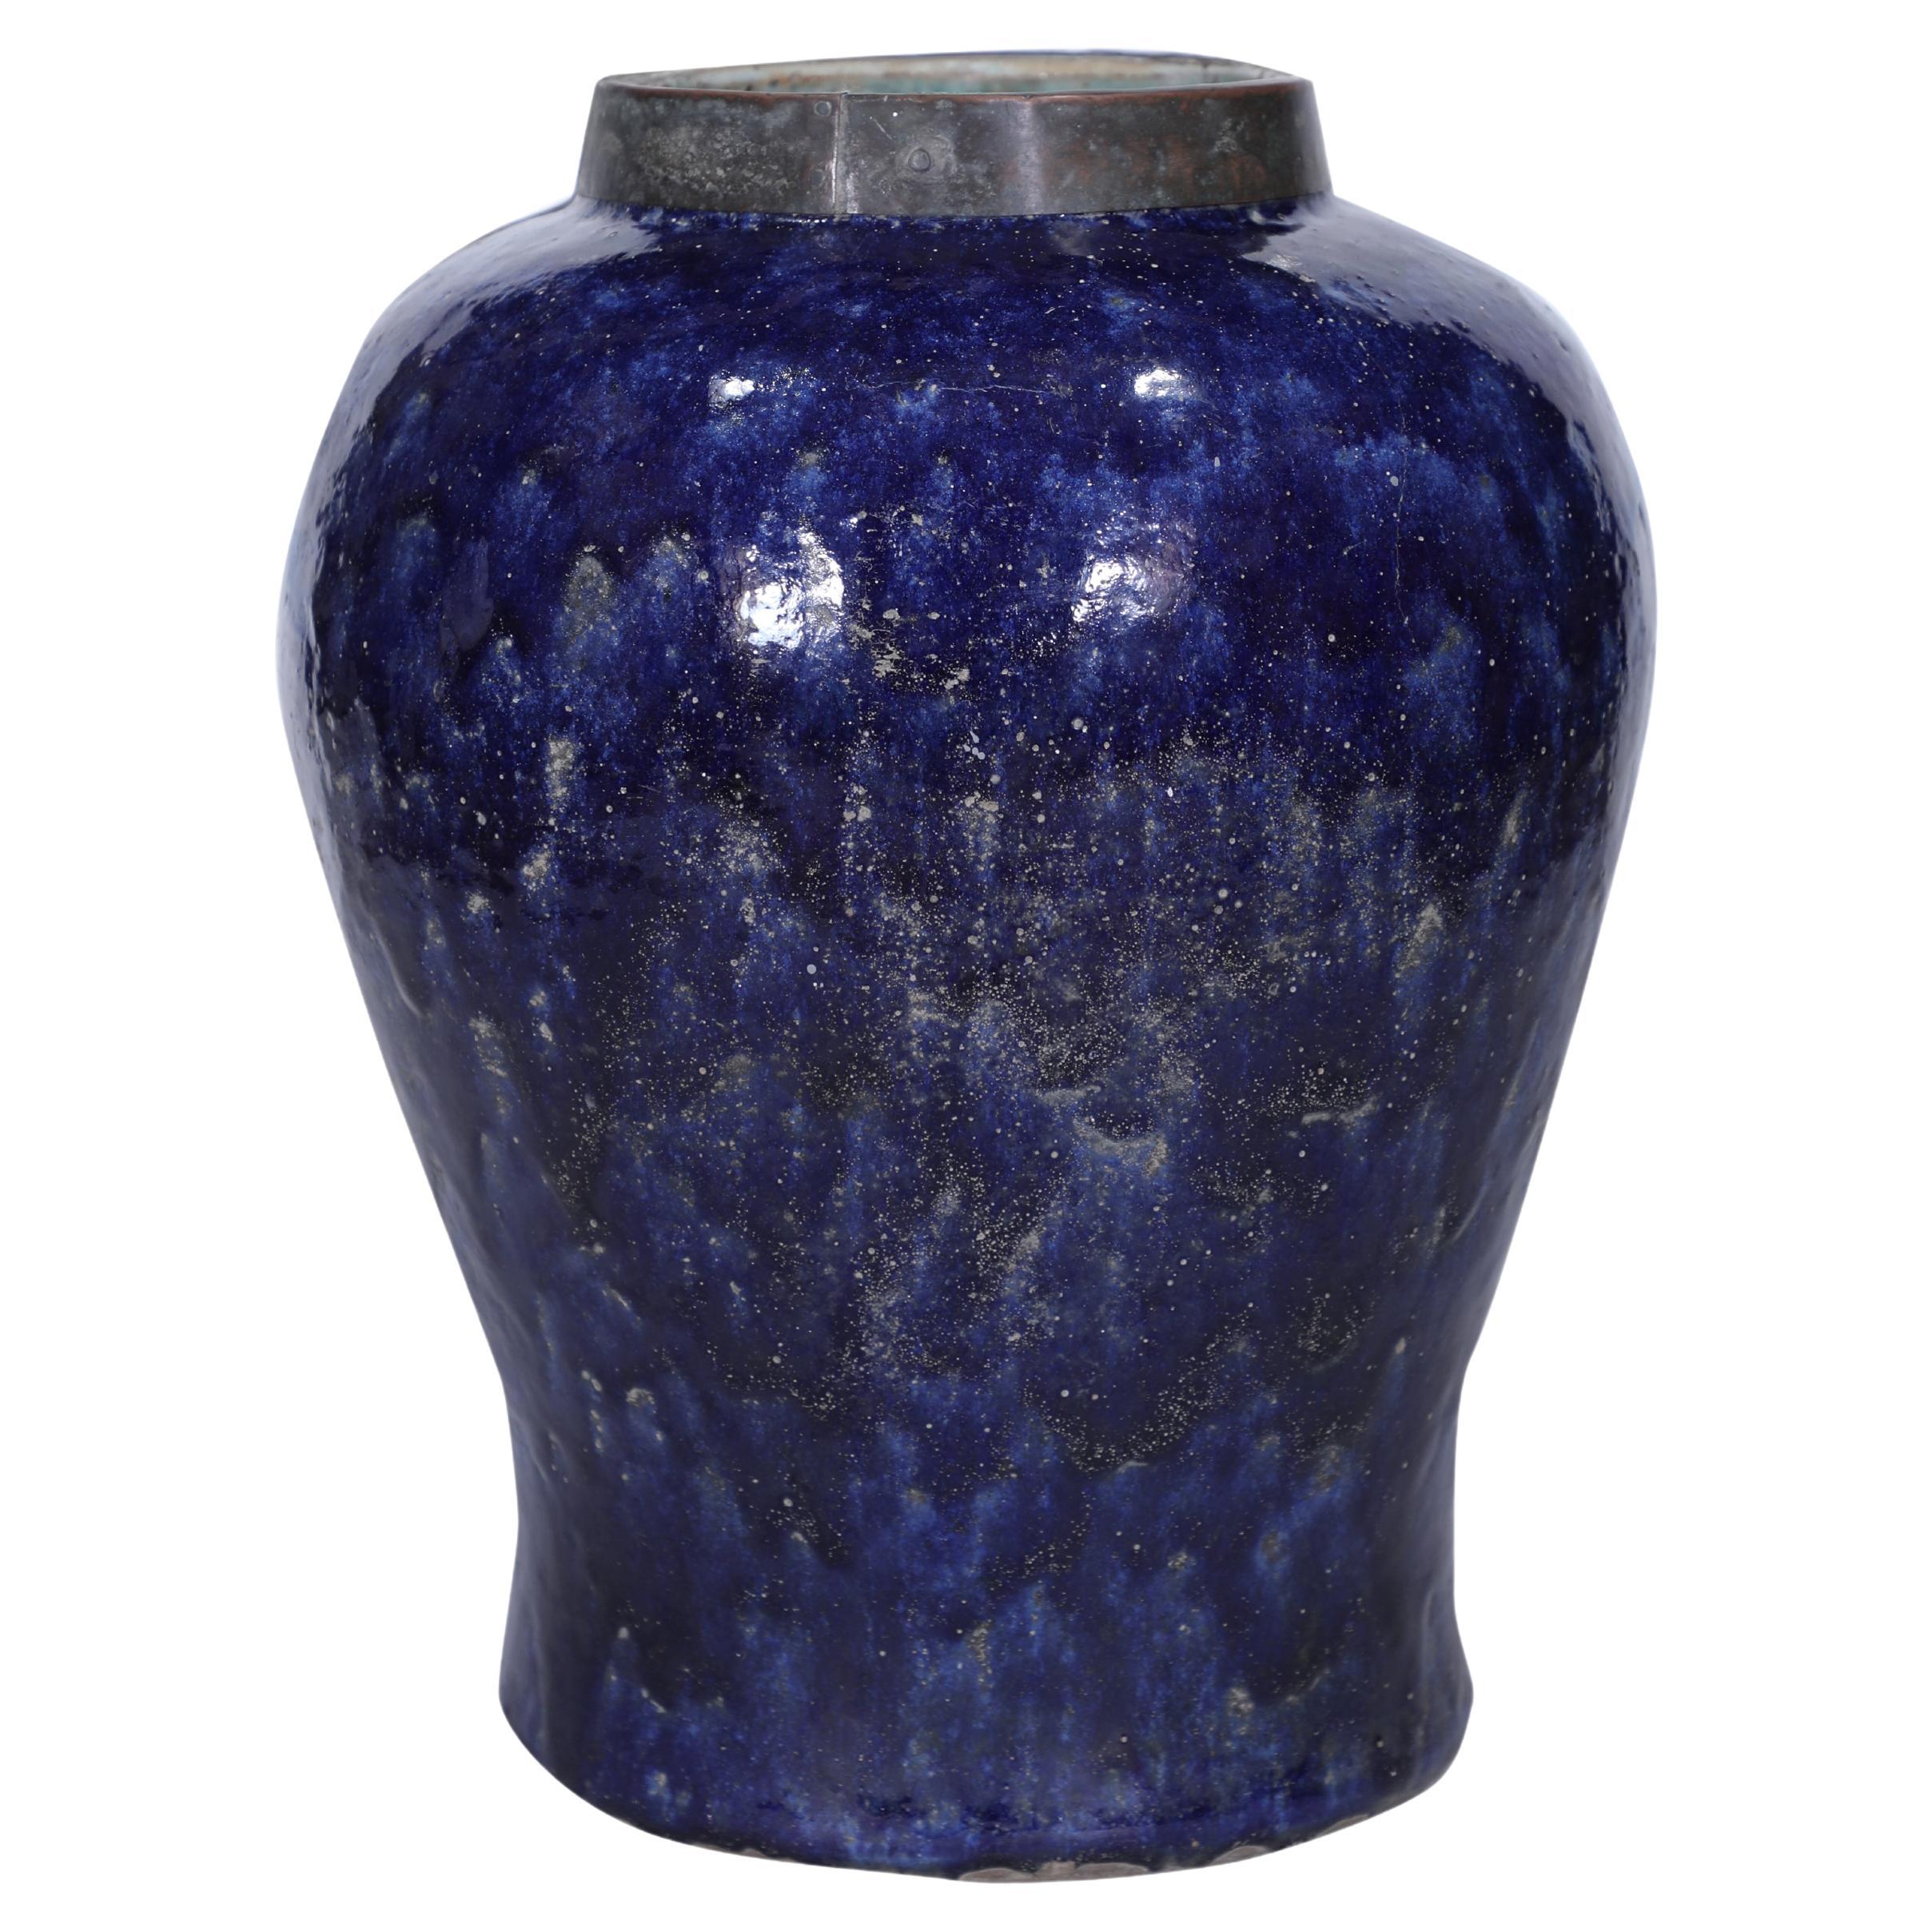 Large Cobalt Blue Ceramic Urn or Planter For Sale